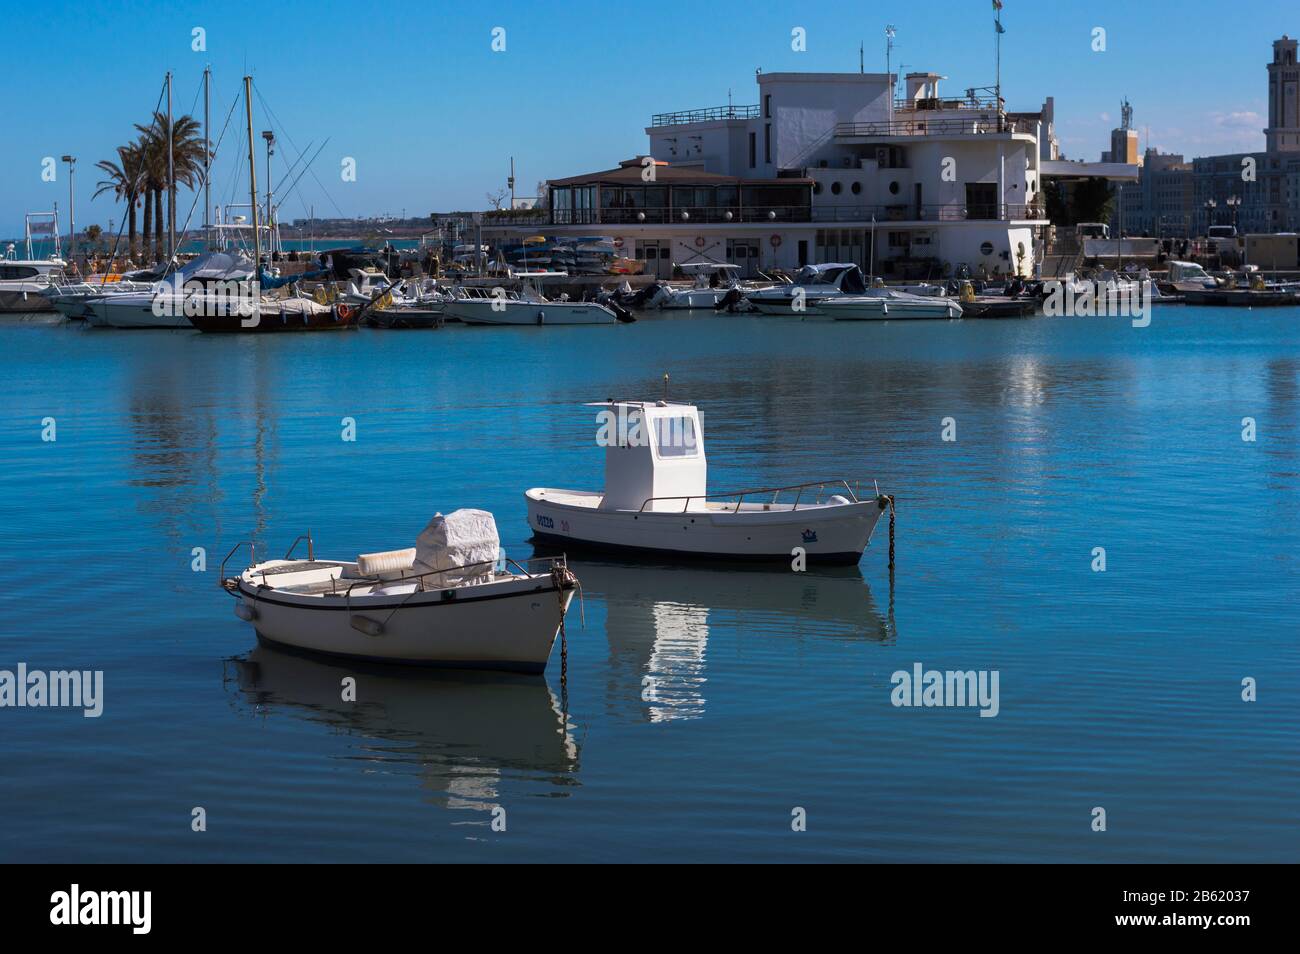 Bari, ITALIE - 16 FÉVRIER 2020: Deux petits bateaux sur l'eau calme sur fond de quai au port de pêche de Bari dans les Pouilles Banque D'Images